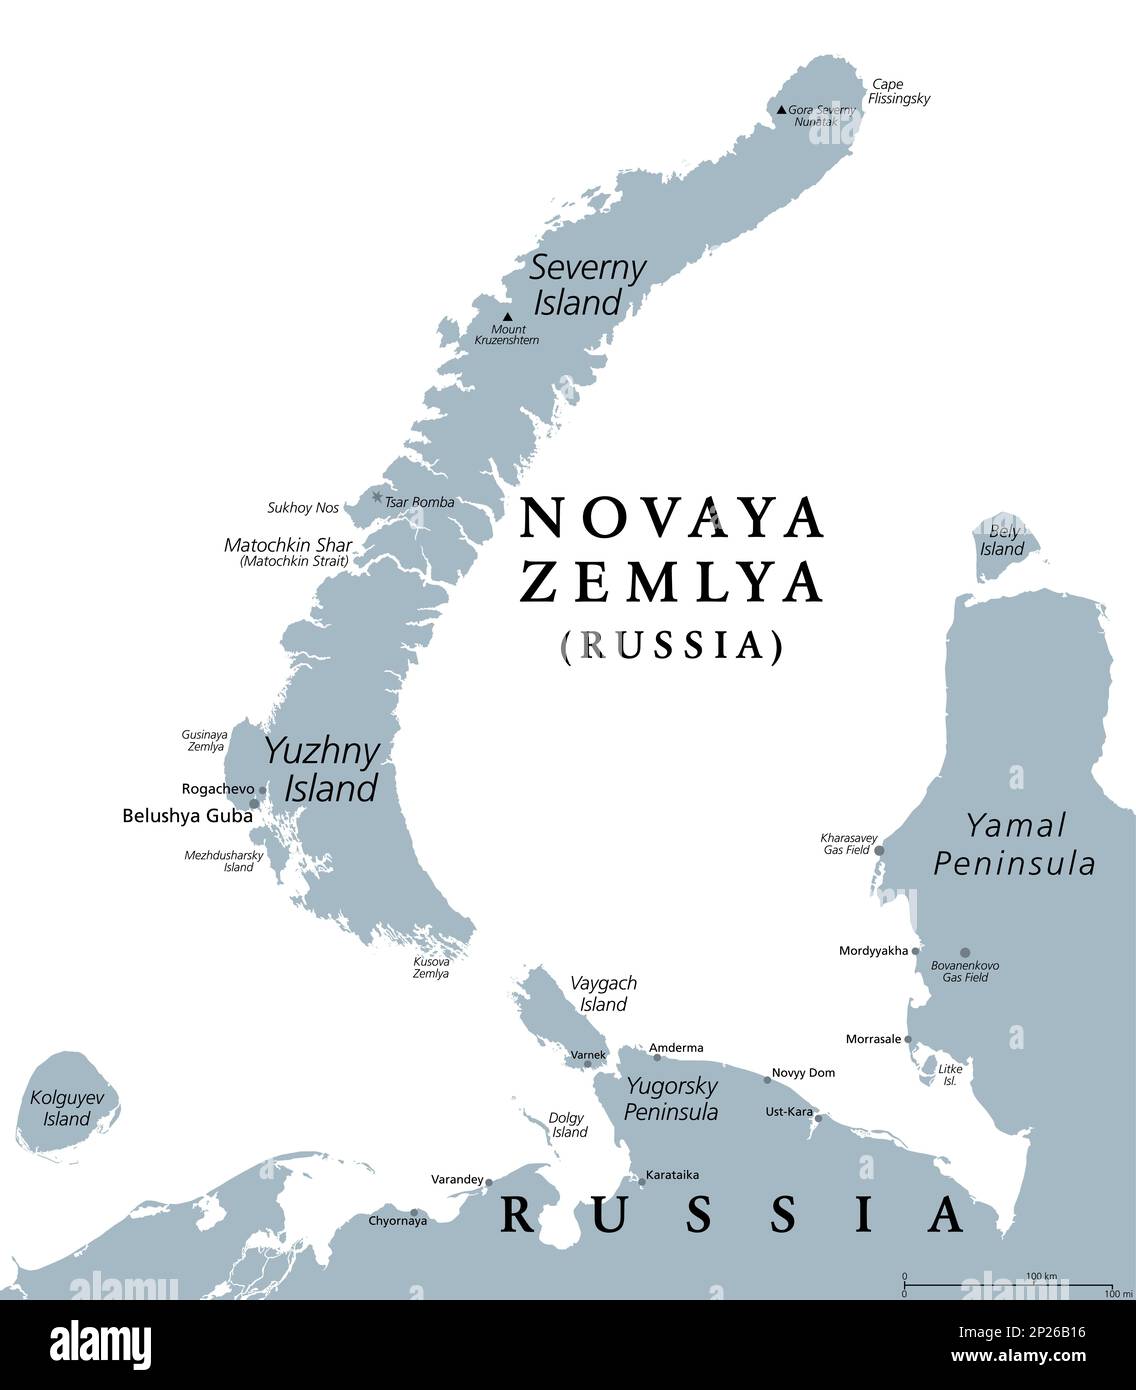 Novaya Zemlya, Inselgruppe im Norden Russlands, graue politische Karte. Gelegen im Arktischen Ozean, bestehend aus Severny Island und Yuzhny Island. Stockfoto